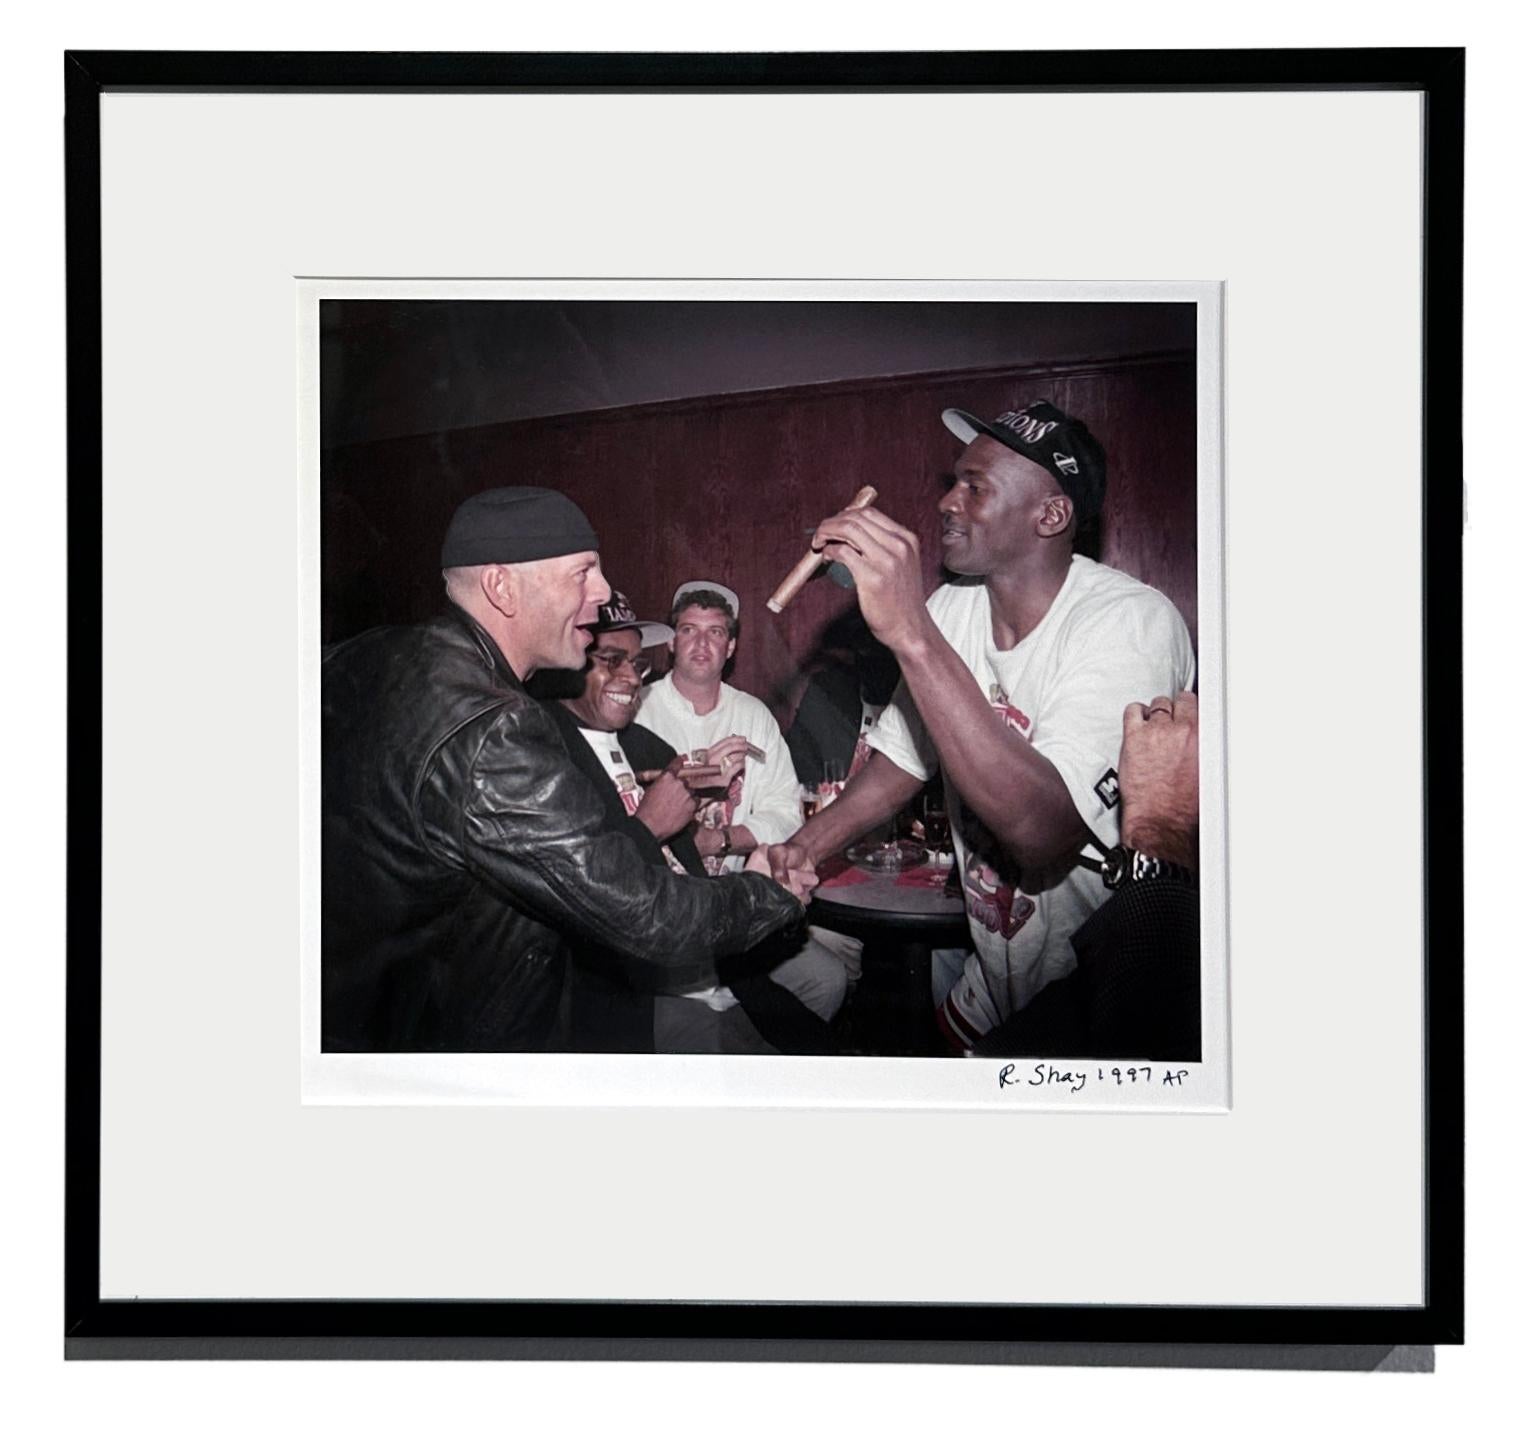 Michael Jordan und Bruce Willis feiern den 5. Sieg der Stier – Farbfotografie (Schwarz), Color Photograph, von Richard Shay